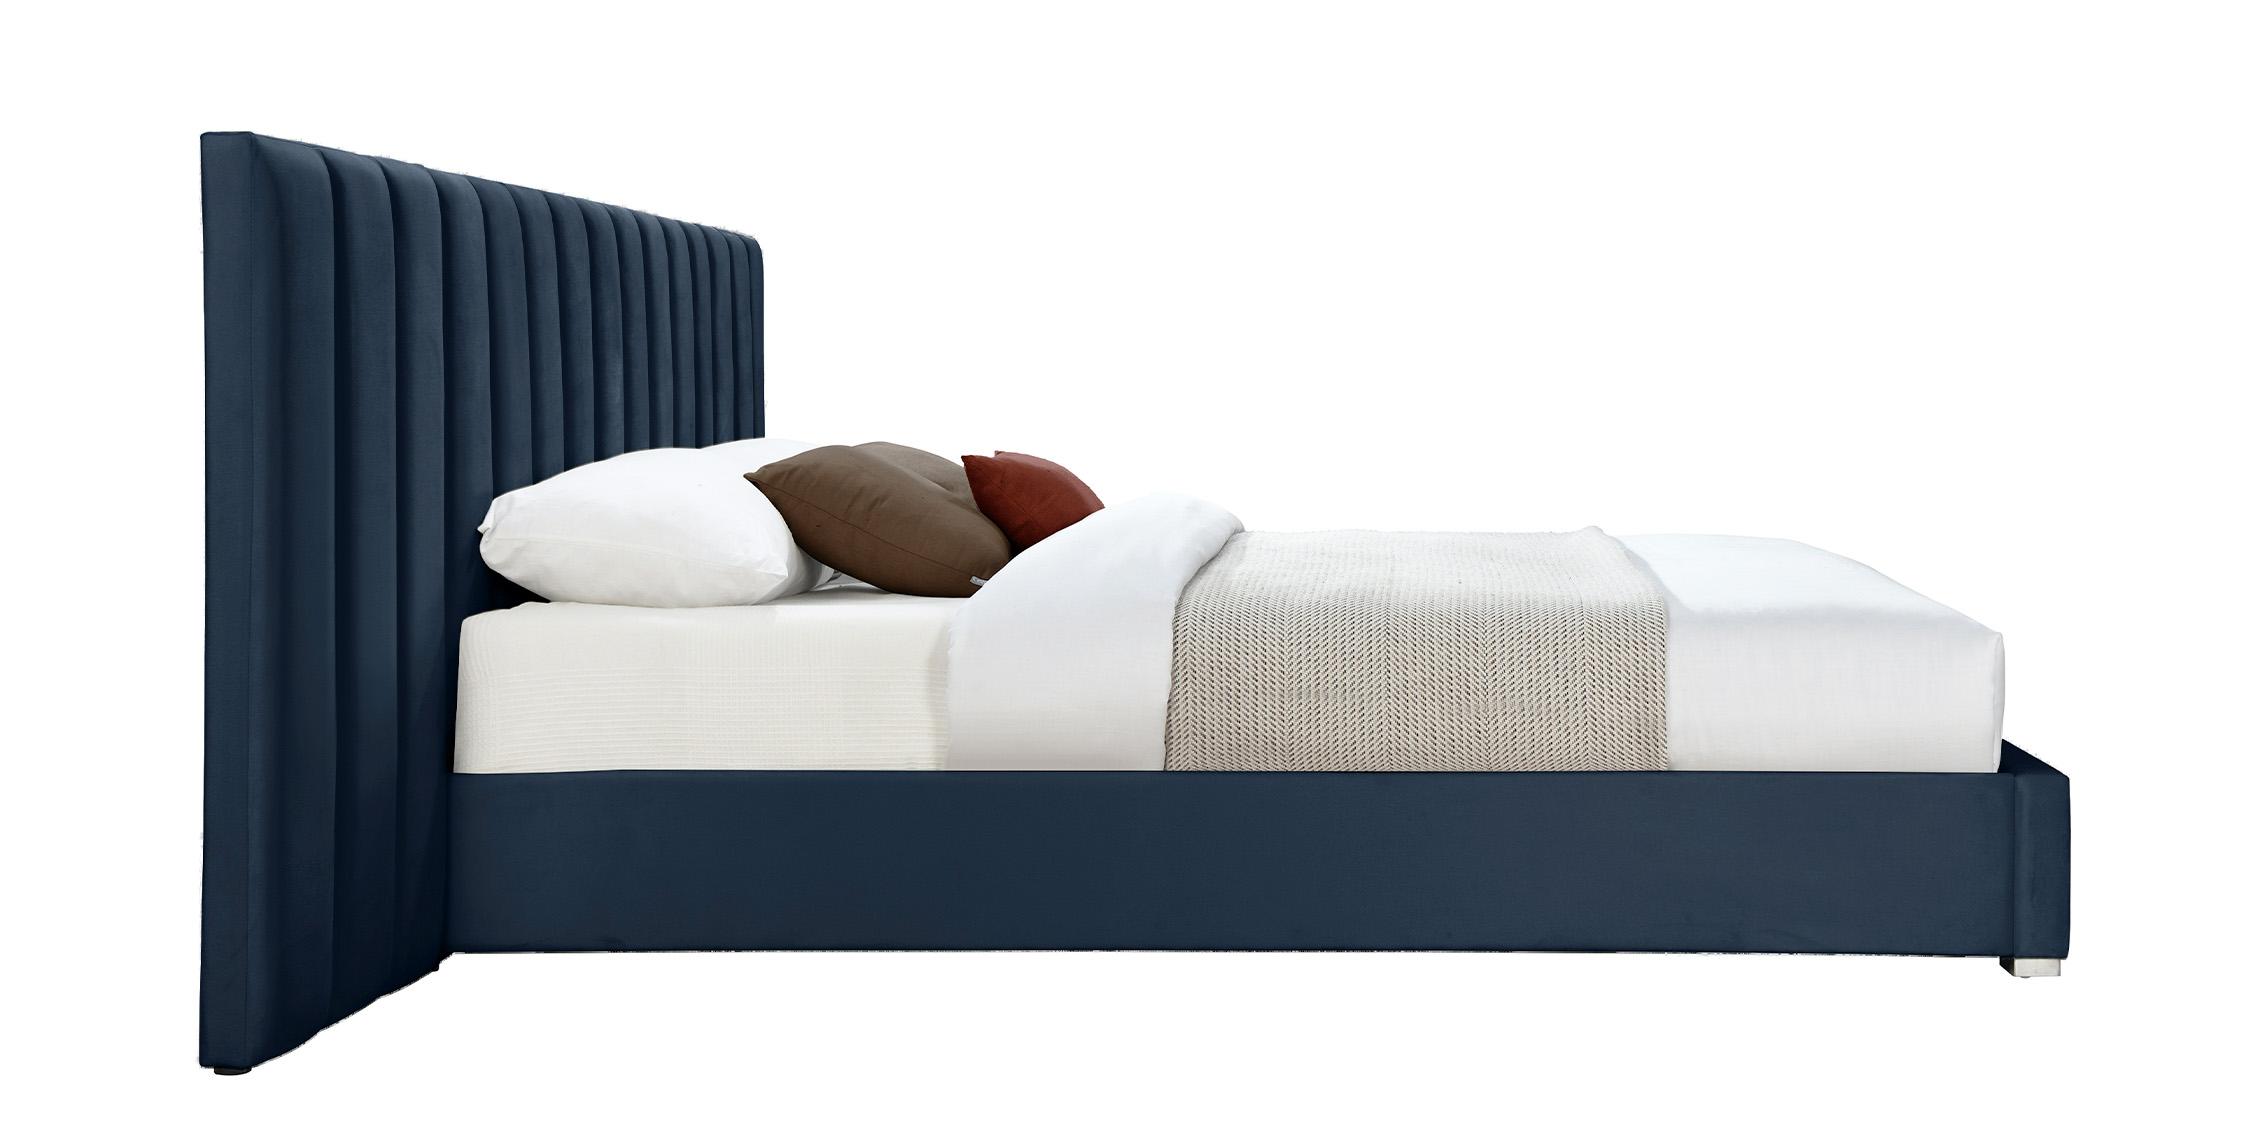 

    
PabloNavy-K Meridian Furniture Platform Bed
